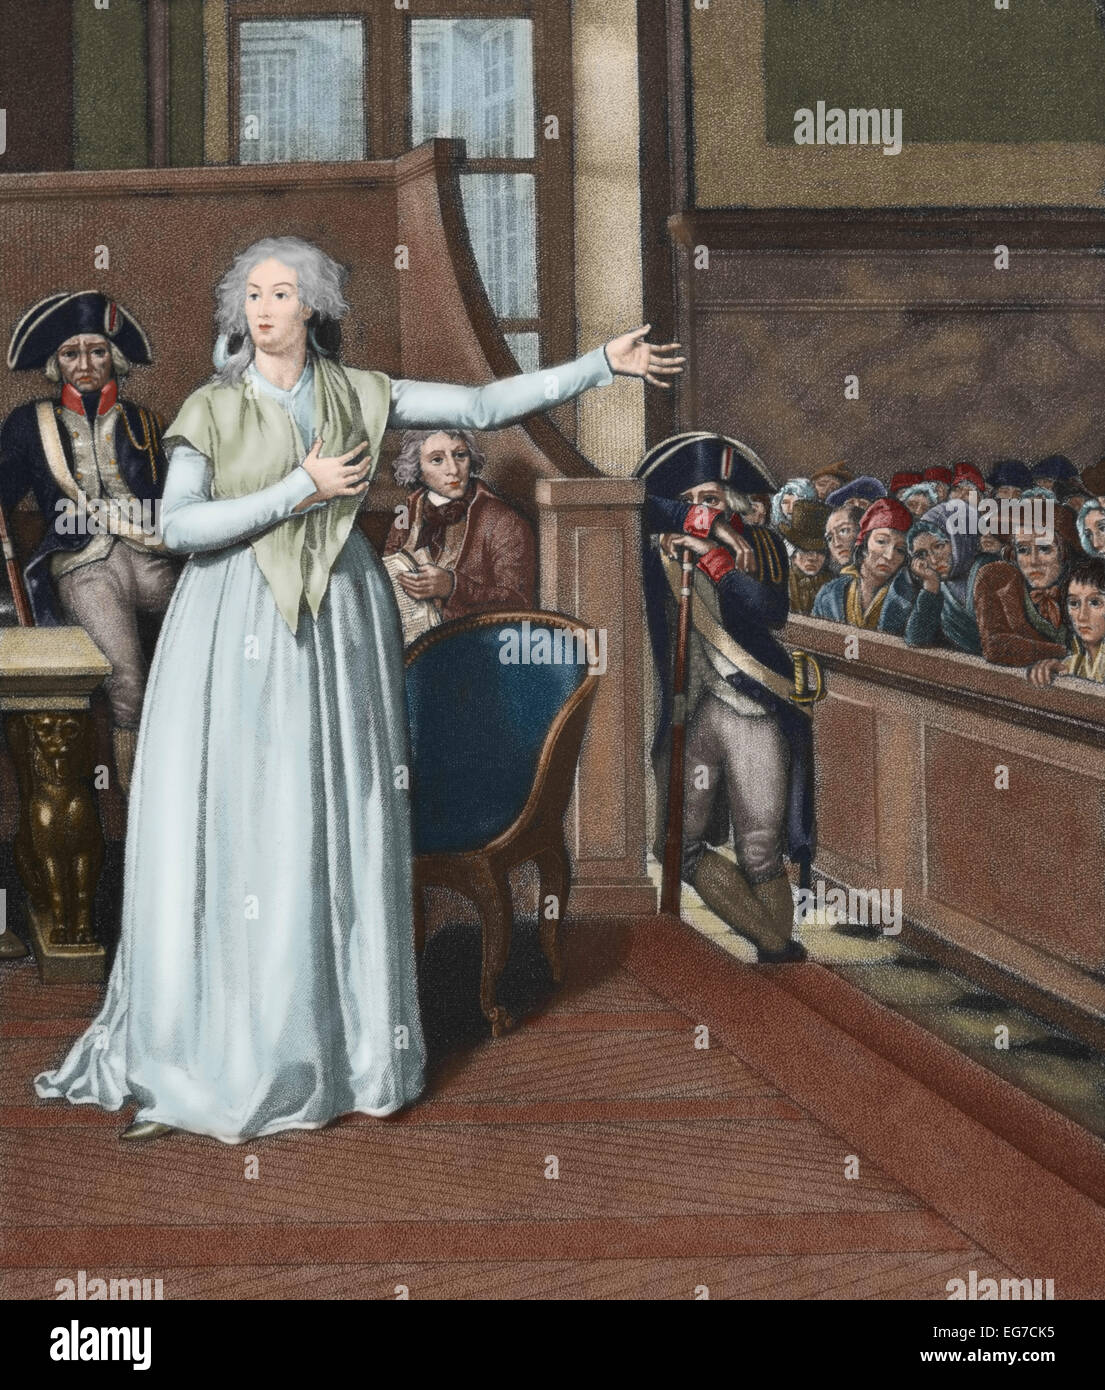 Marie Antoinette (1755-1793), épouse de Louis XVI et de la reine de France, devant la cour. La gravure. De couleur. Banque D'Images